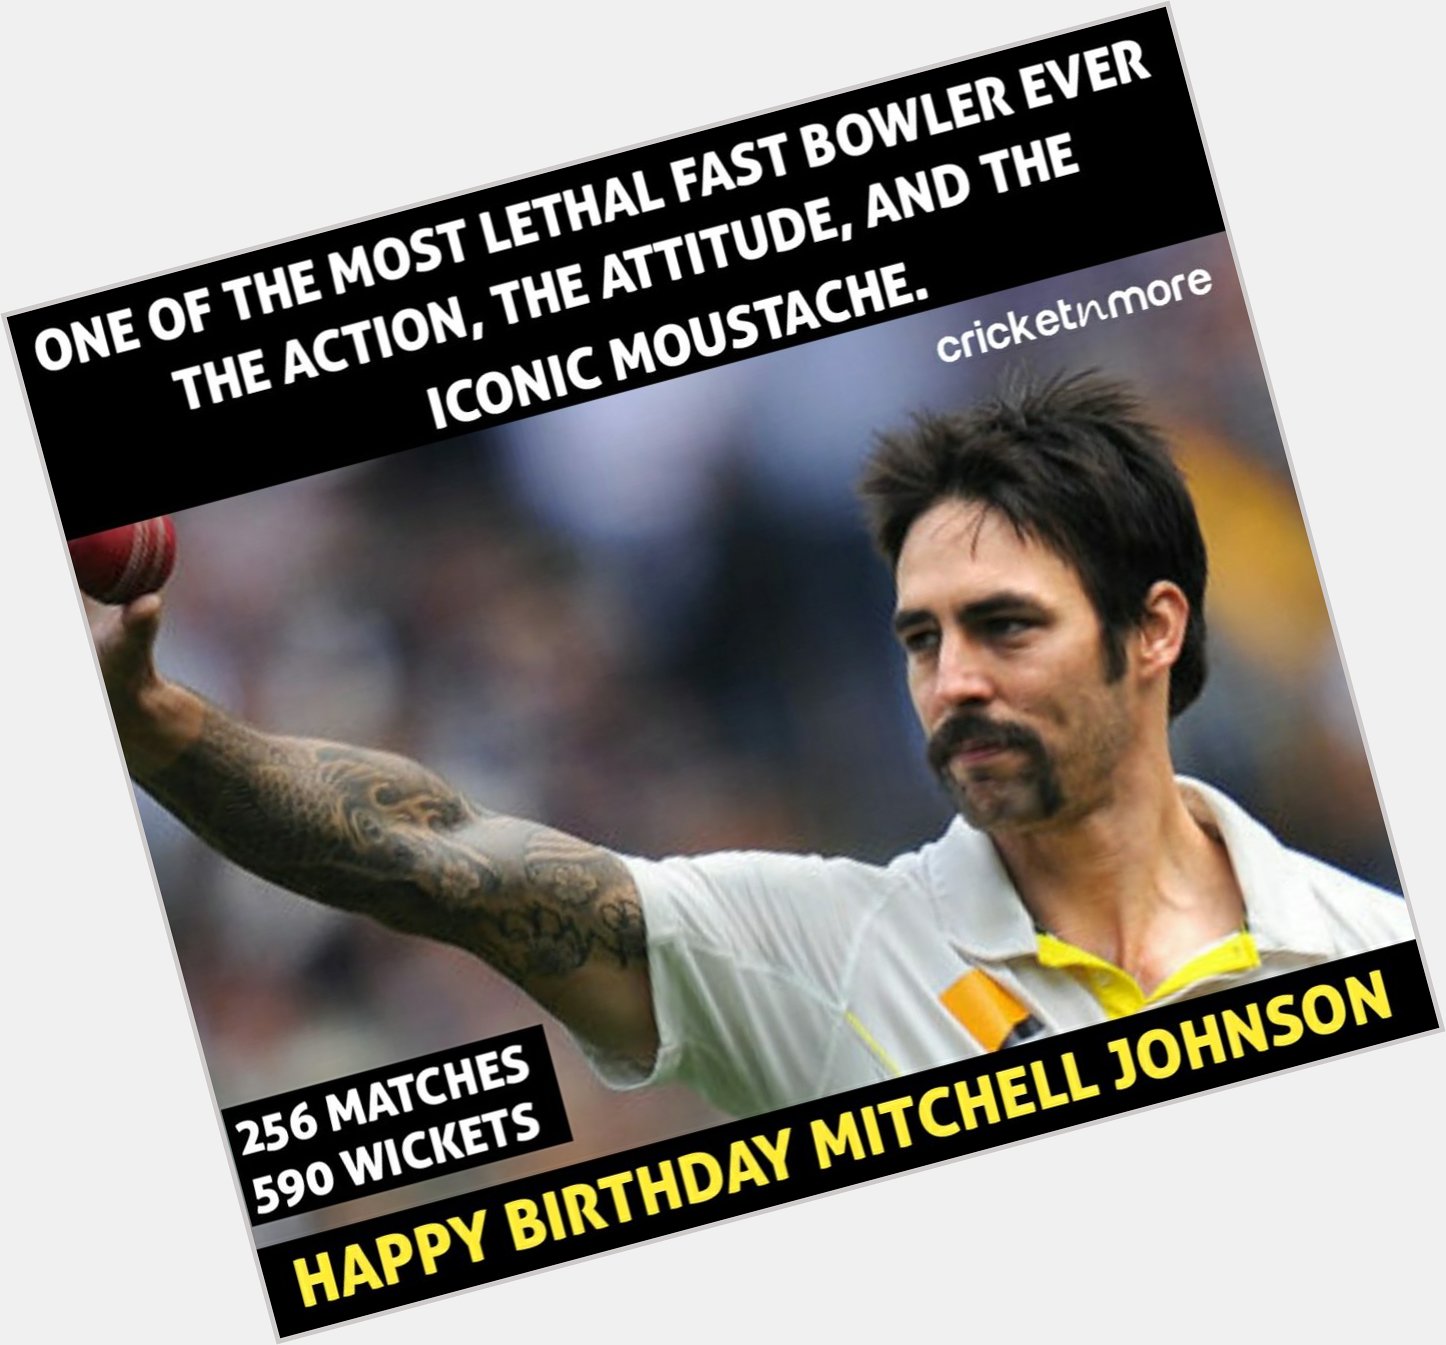 Happy Birthday Mitchell Johnson!
.
.  